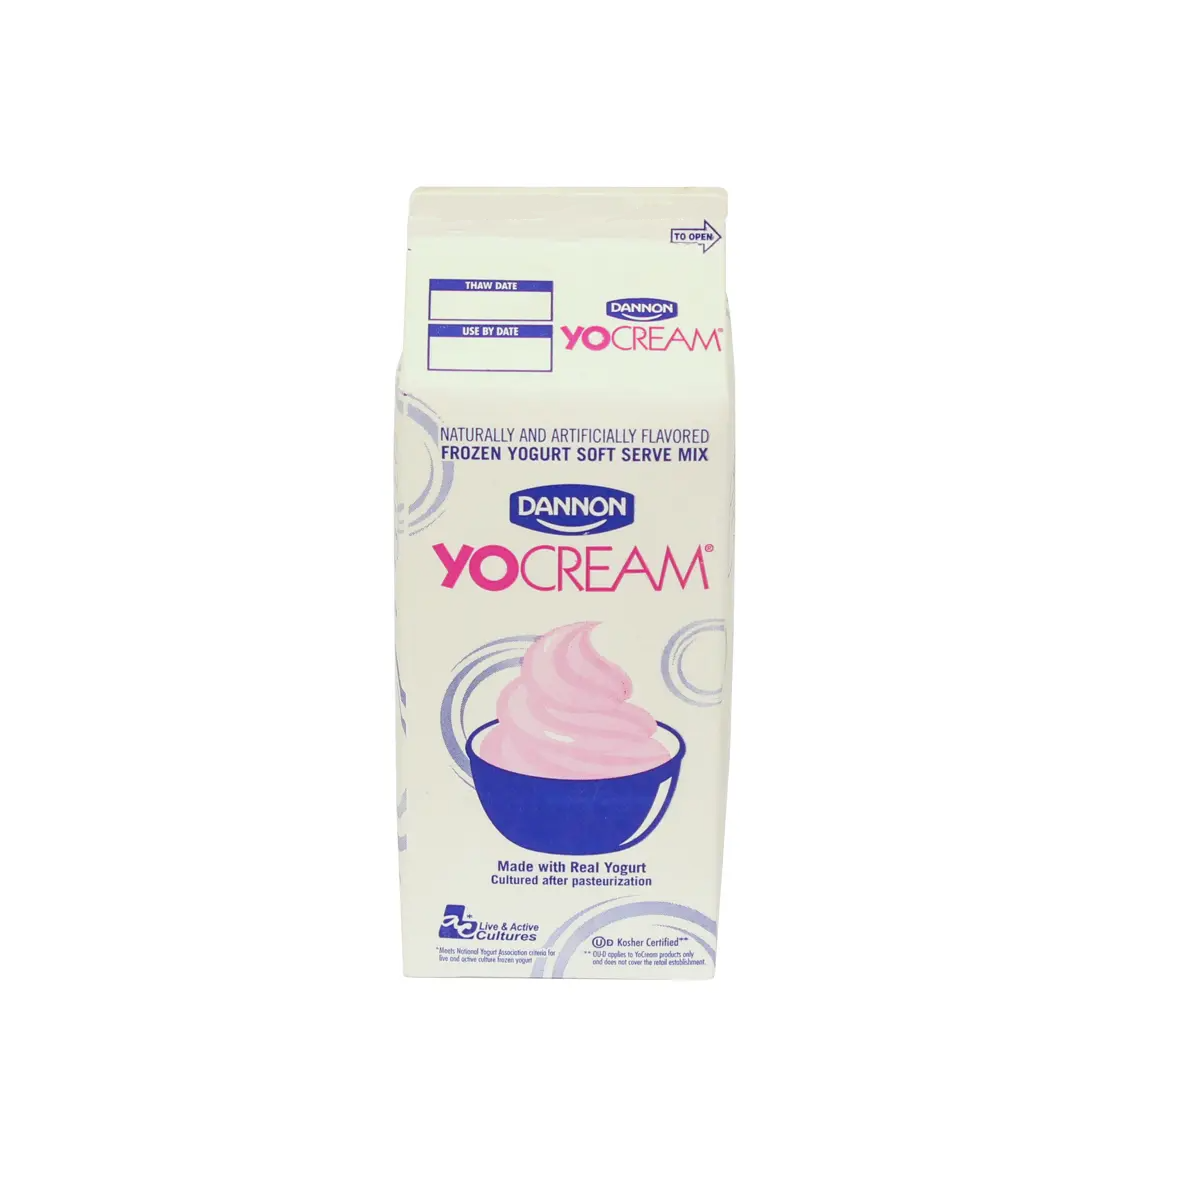 YoCream Nonfat Frozen Yogurt Cable Car Chocolate 6 units per case